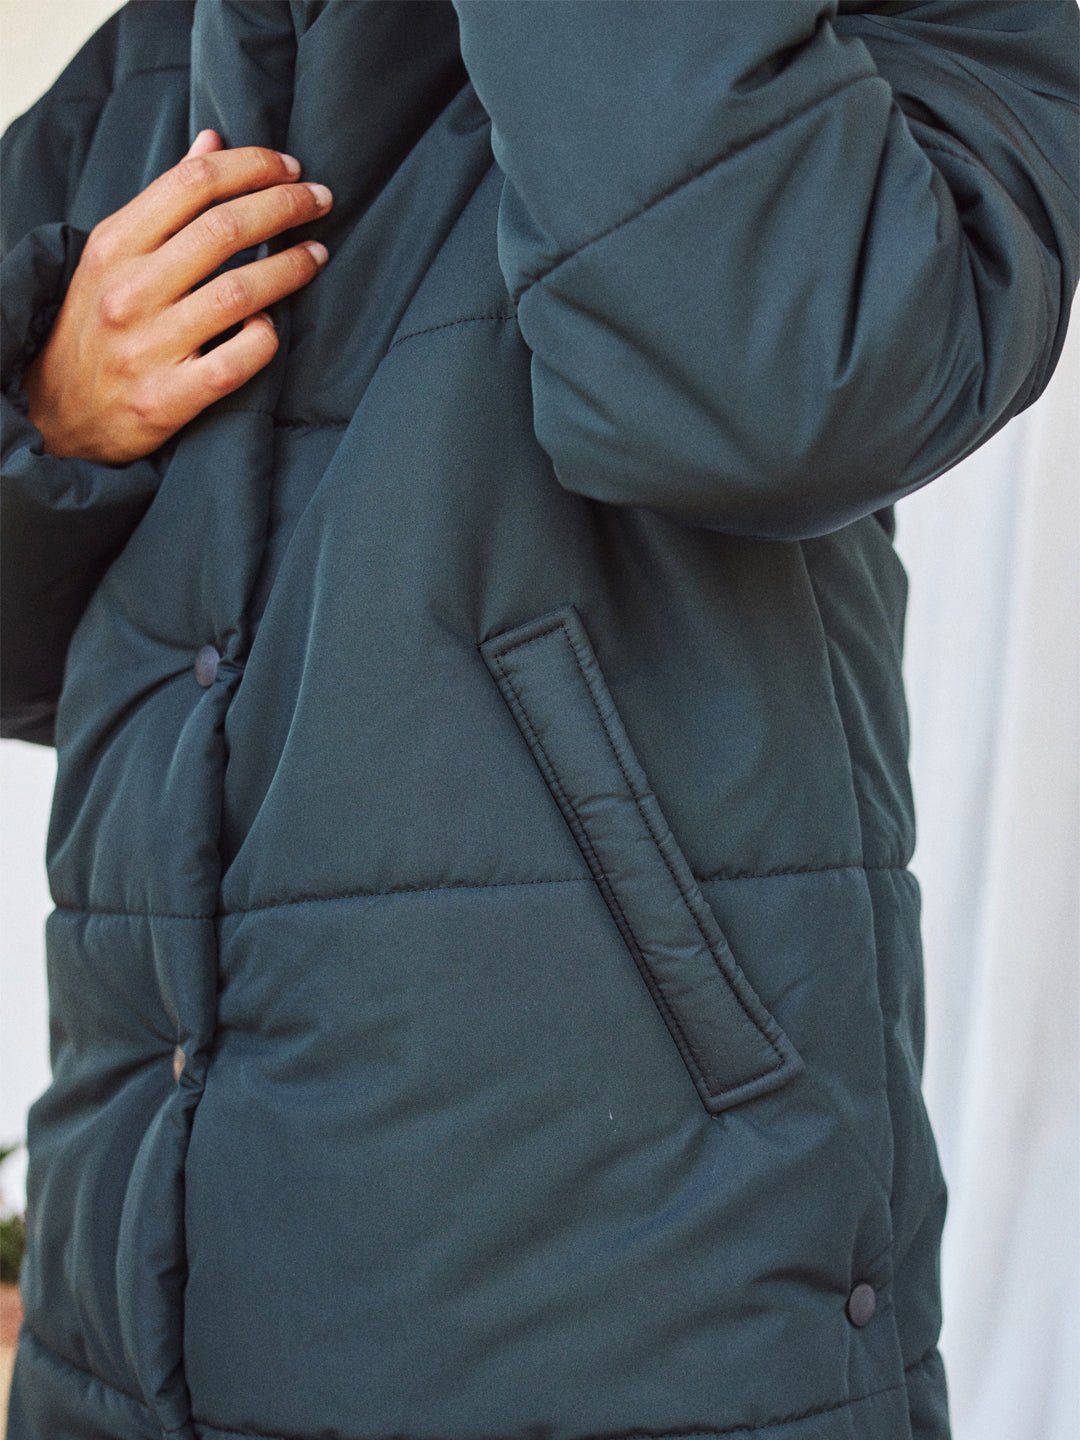 Knopfleiste Taschen extra warm TWOTHIRDS mit Winterjacke und Hirado